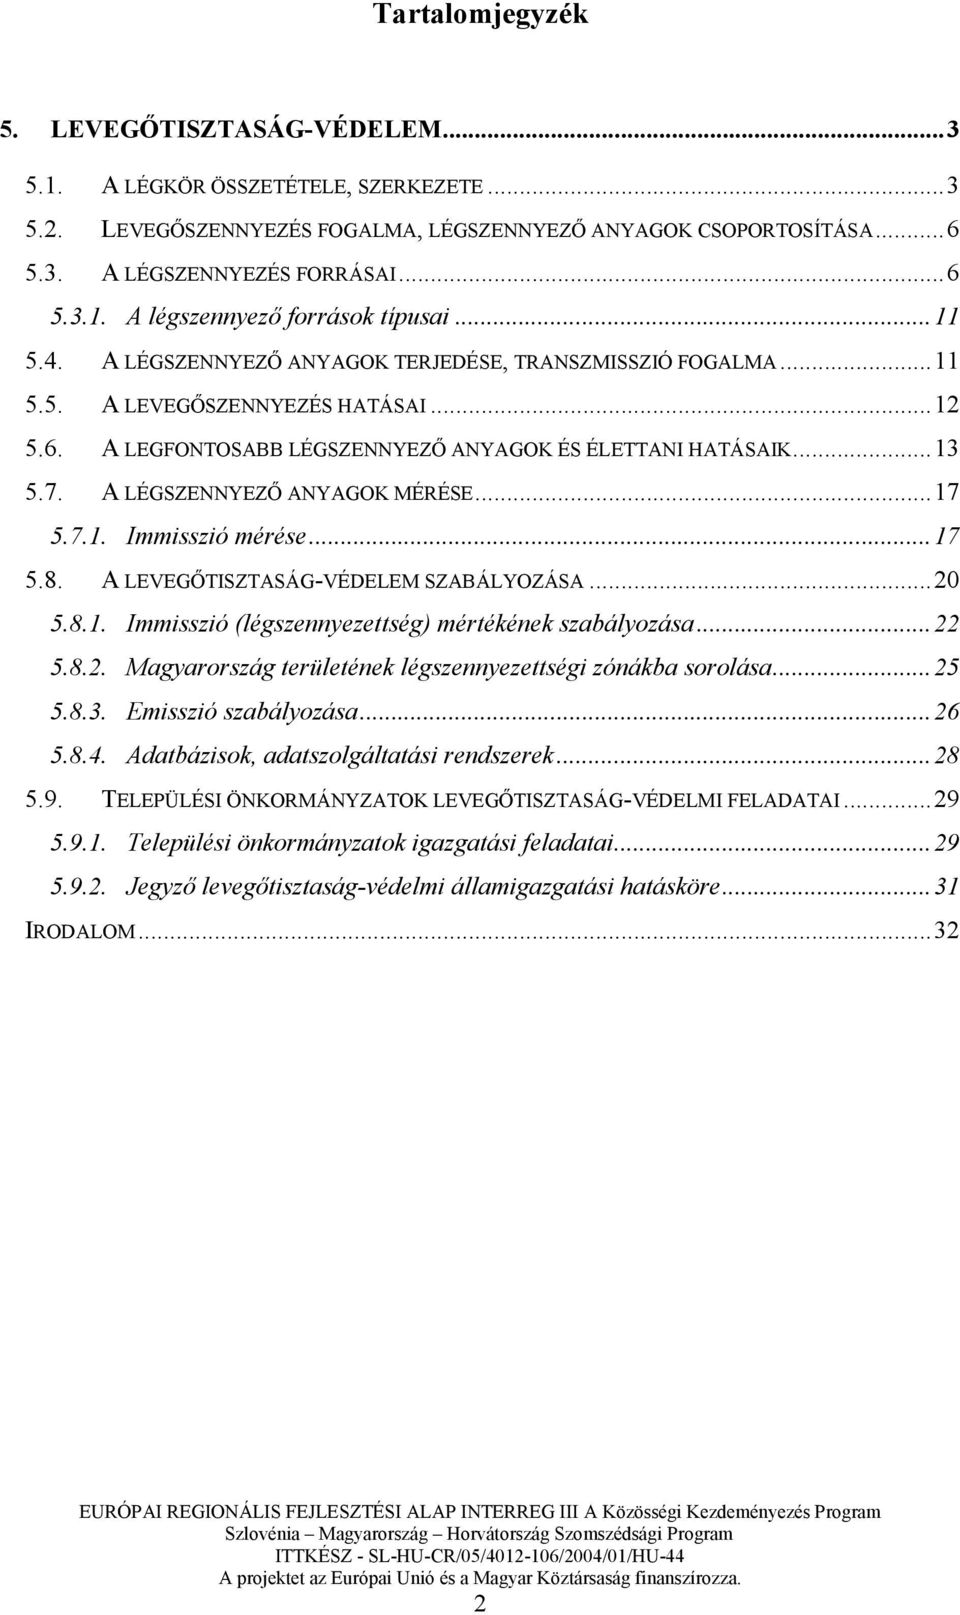 A LÉGSZENNYEZİ ANYAGOK MÉRÉSE...17 5.7.1. Immisszió mérése...17 5.8. A LEVEGİTISZTASÁG-VÉDELEM SZABÁLYOZÁSA...20 5.8.1. Immisszió (légszennyezettség) mértékének szabályozása...22 5.8.2. Magyarország területének légszennyezettségi zónákba sorolása.